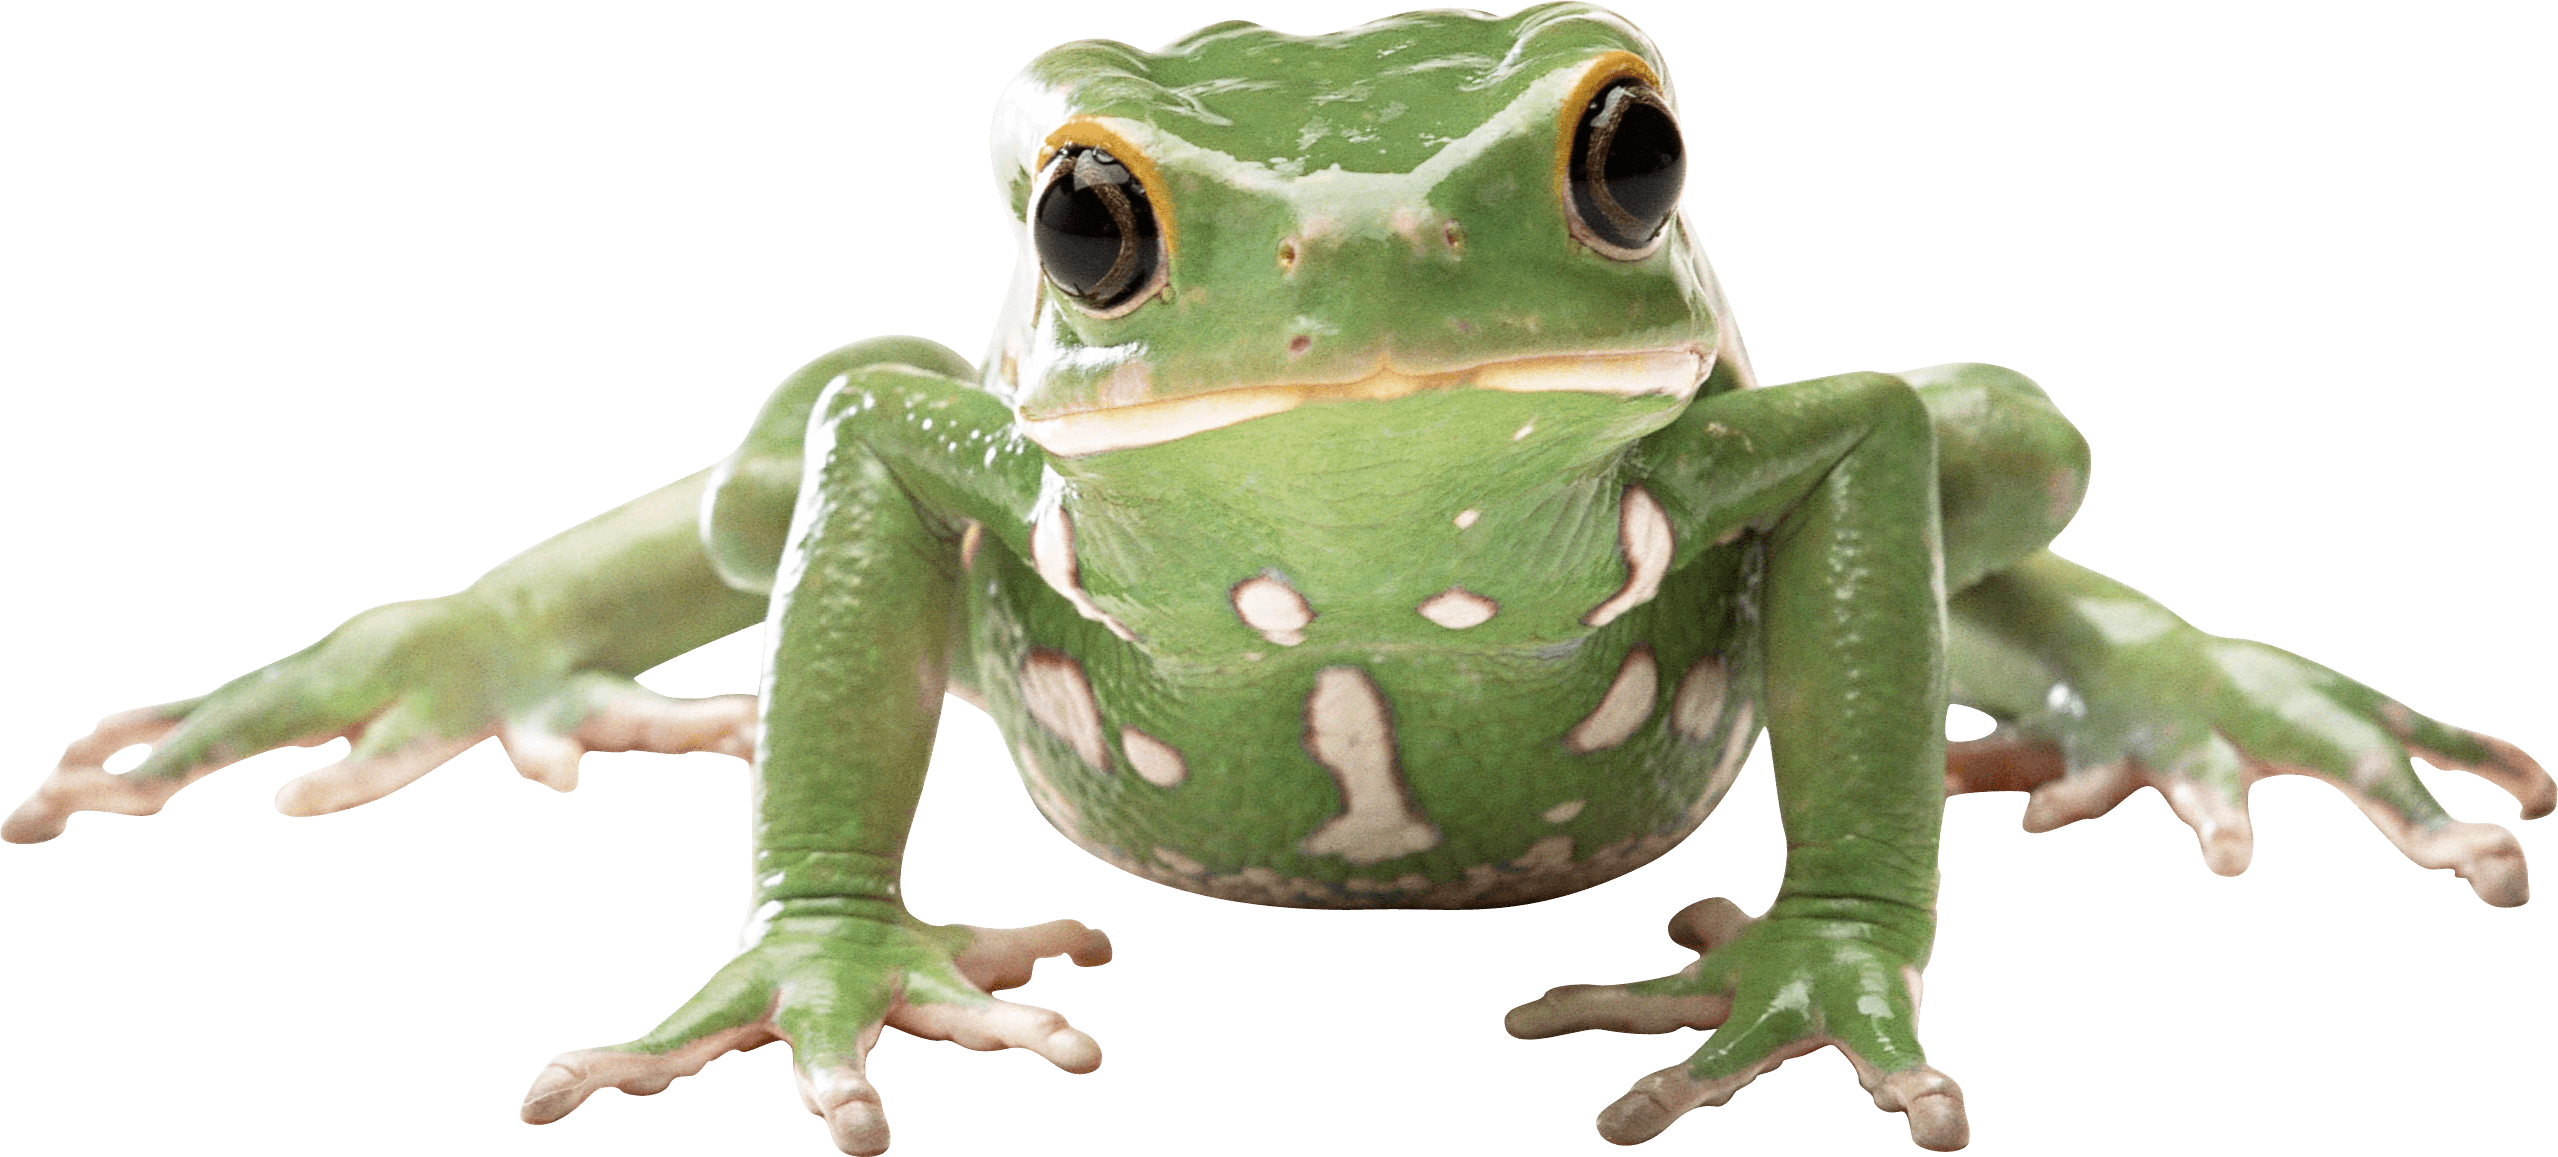 Frog Background PNG Image